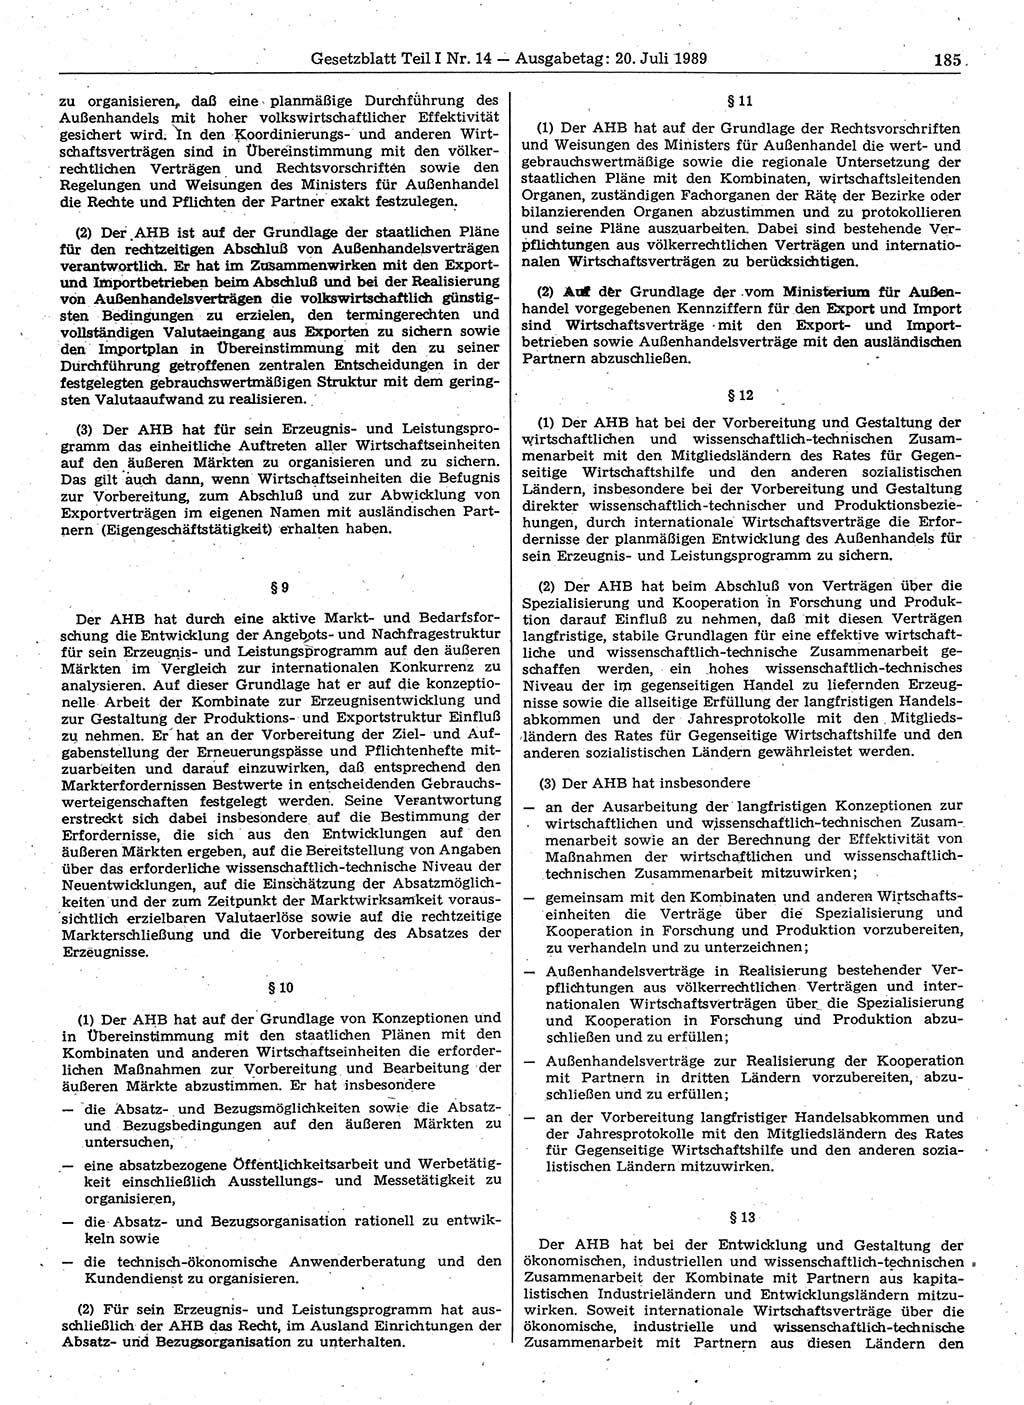 Gesetzblatt (GBl.) der Deutschen Demokratischen Republik (DDR) Teil Ⅰ 1989, Seite 185 (GBl. DDR Ⅰ 1989, S. 185)